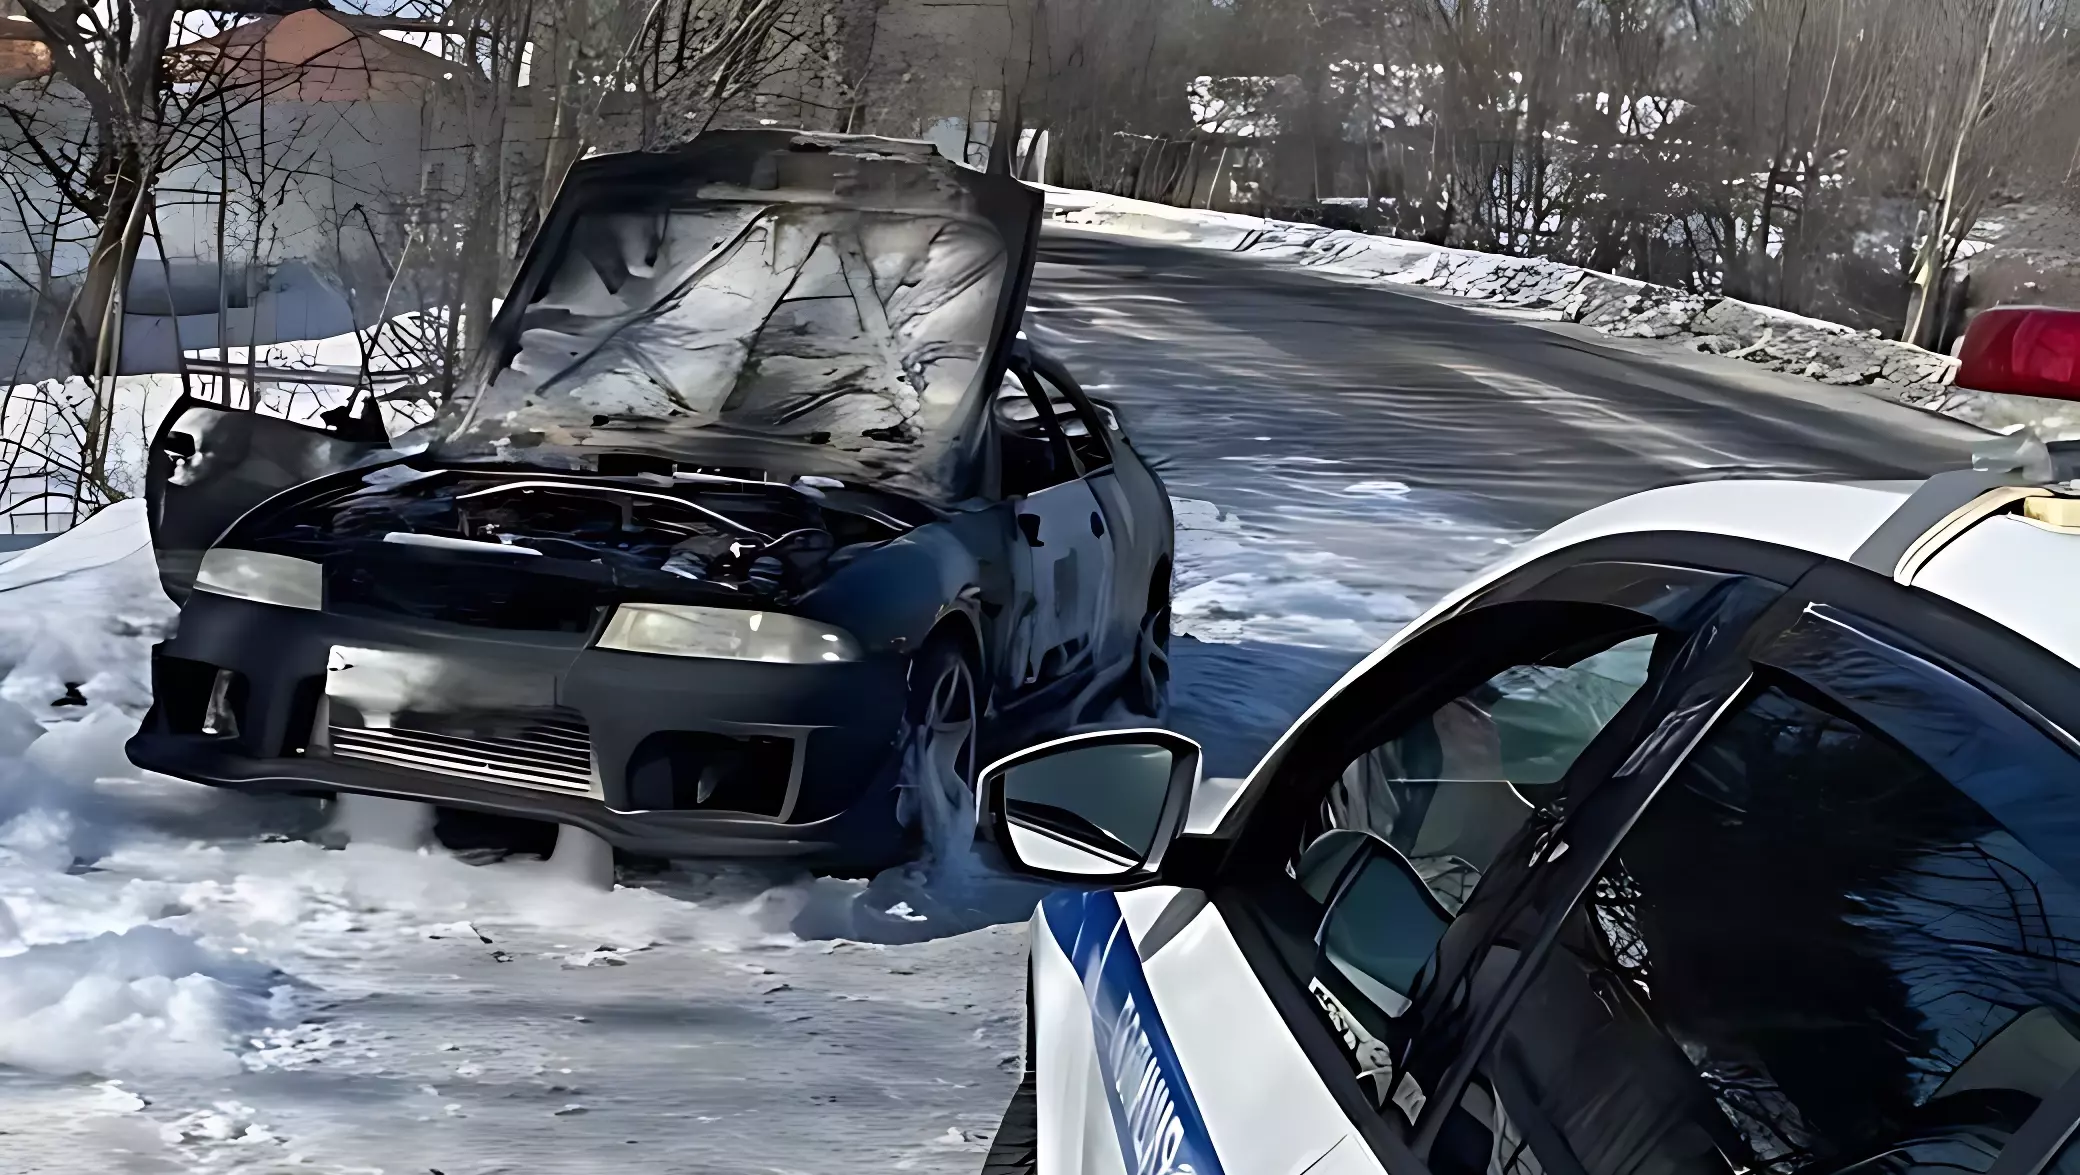 Сгорел после ремонта автомобиль в Хабаровском крае